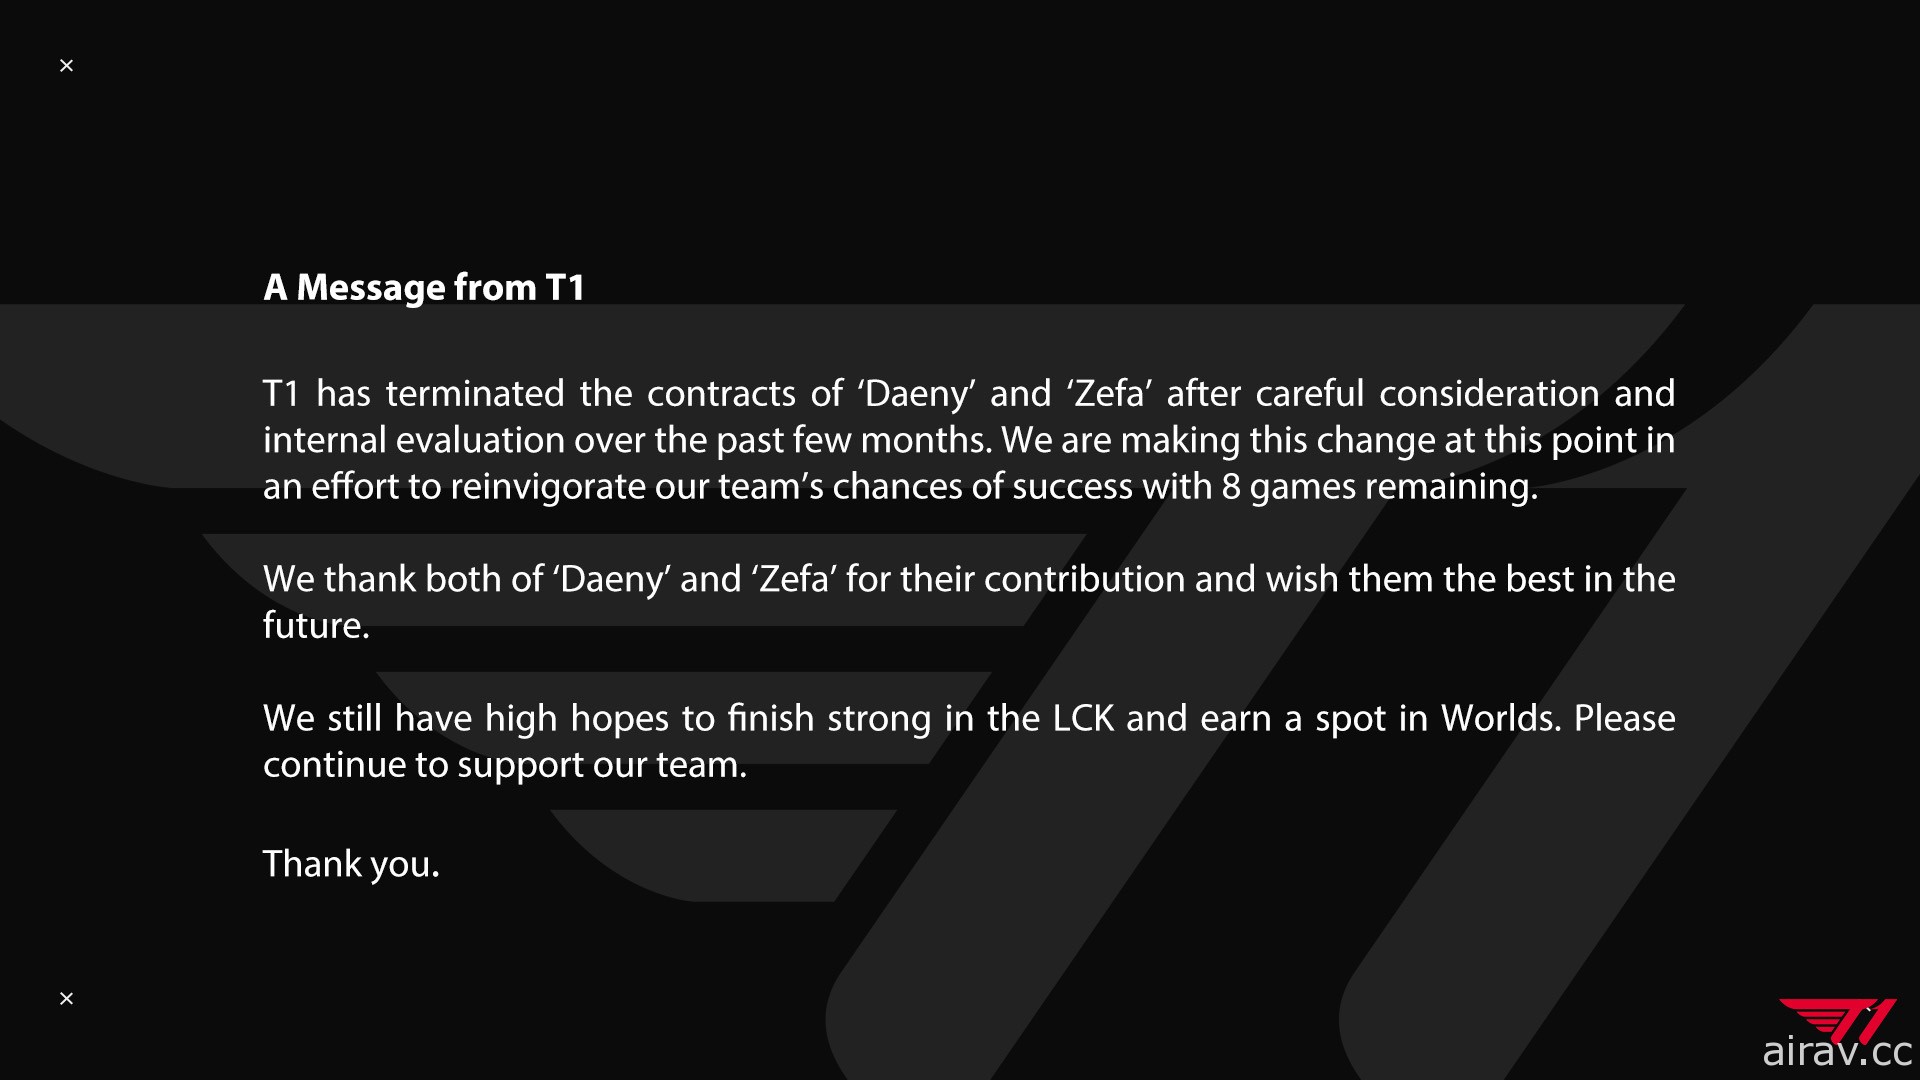 《英雄聯盟》T1 戰隊突然宣布與兩大教練 DAENY 與 ZEFA 終止合約